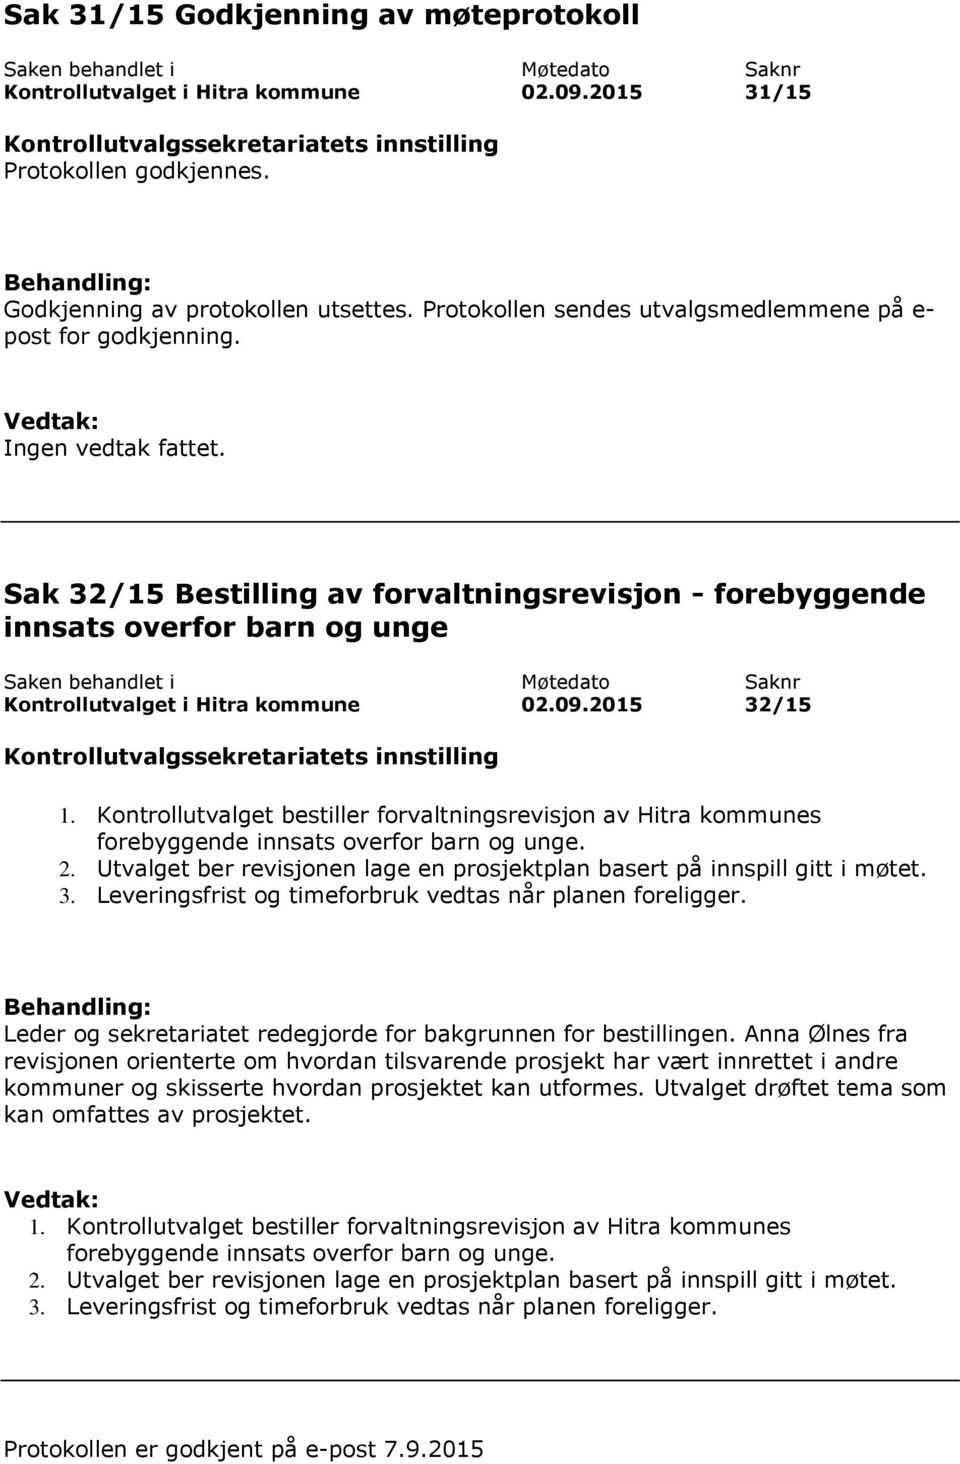 Sak 32/15 Bestilling av forvaltningsrevisjon - forebyggende innsats overfor barn og unge Kontrollutvalget i Hitra kommune 02.09.2015 32/15 1.